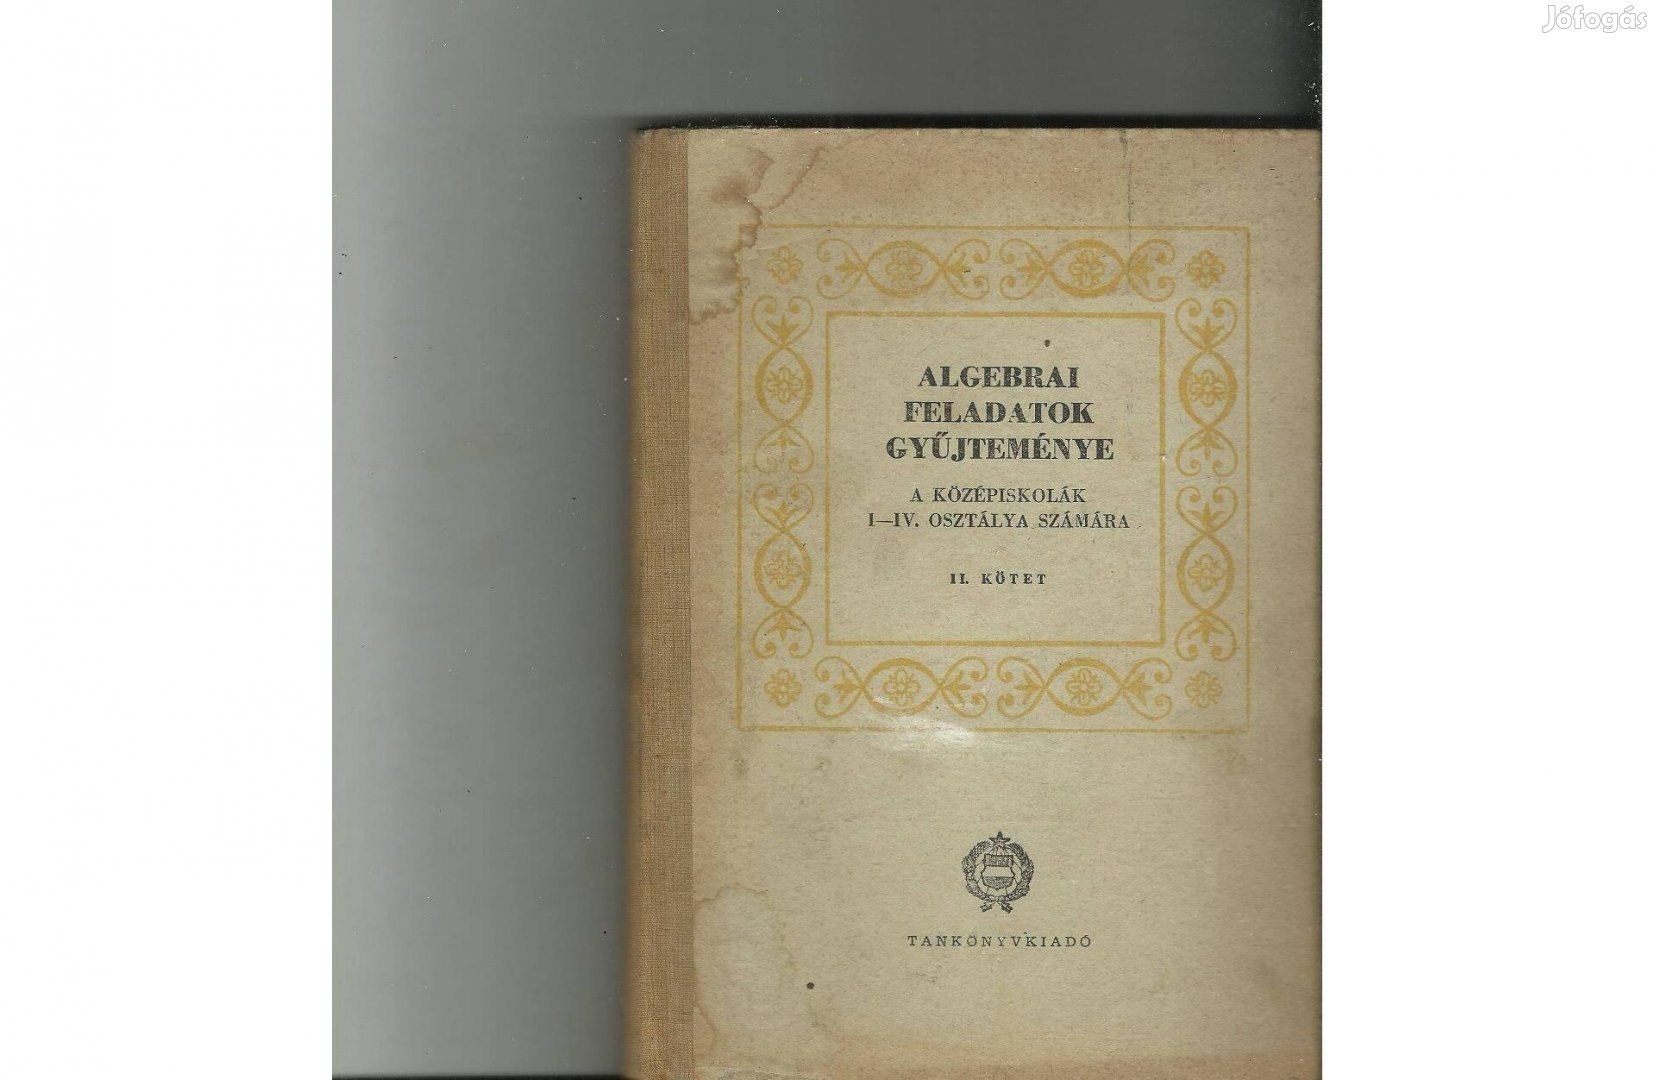 Algebrai feladatok gyűjteménye II. kötet 1964-es kiadás